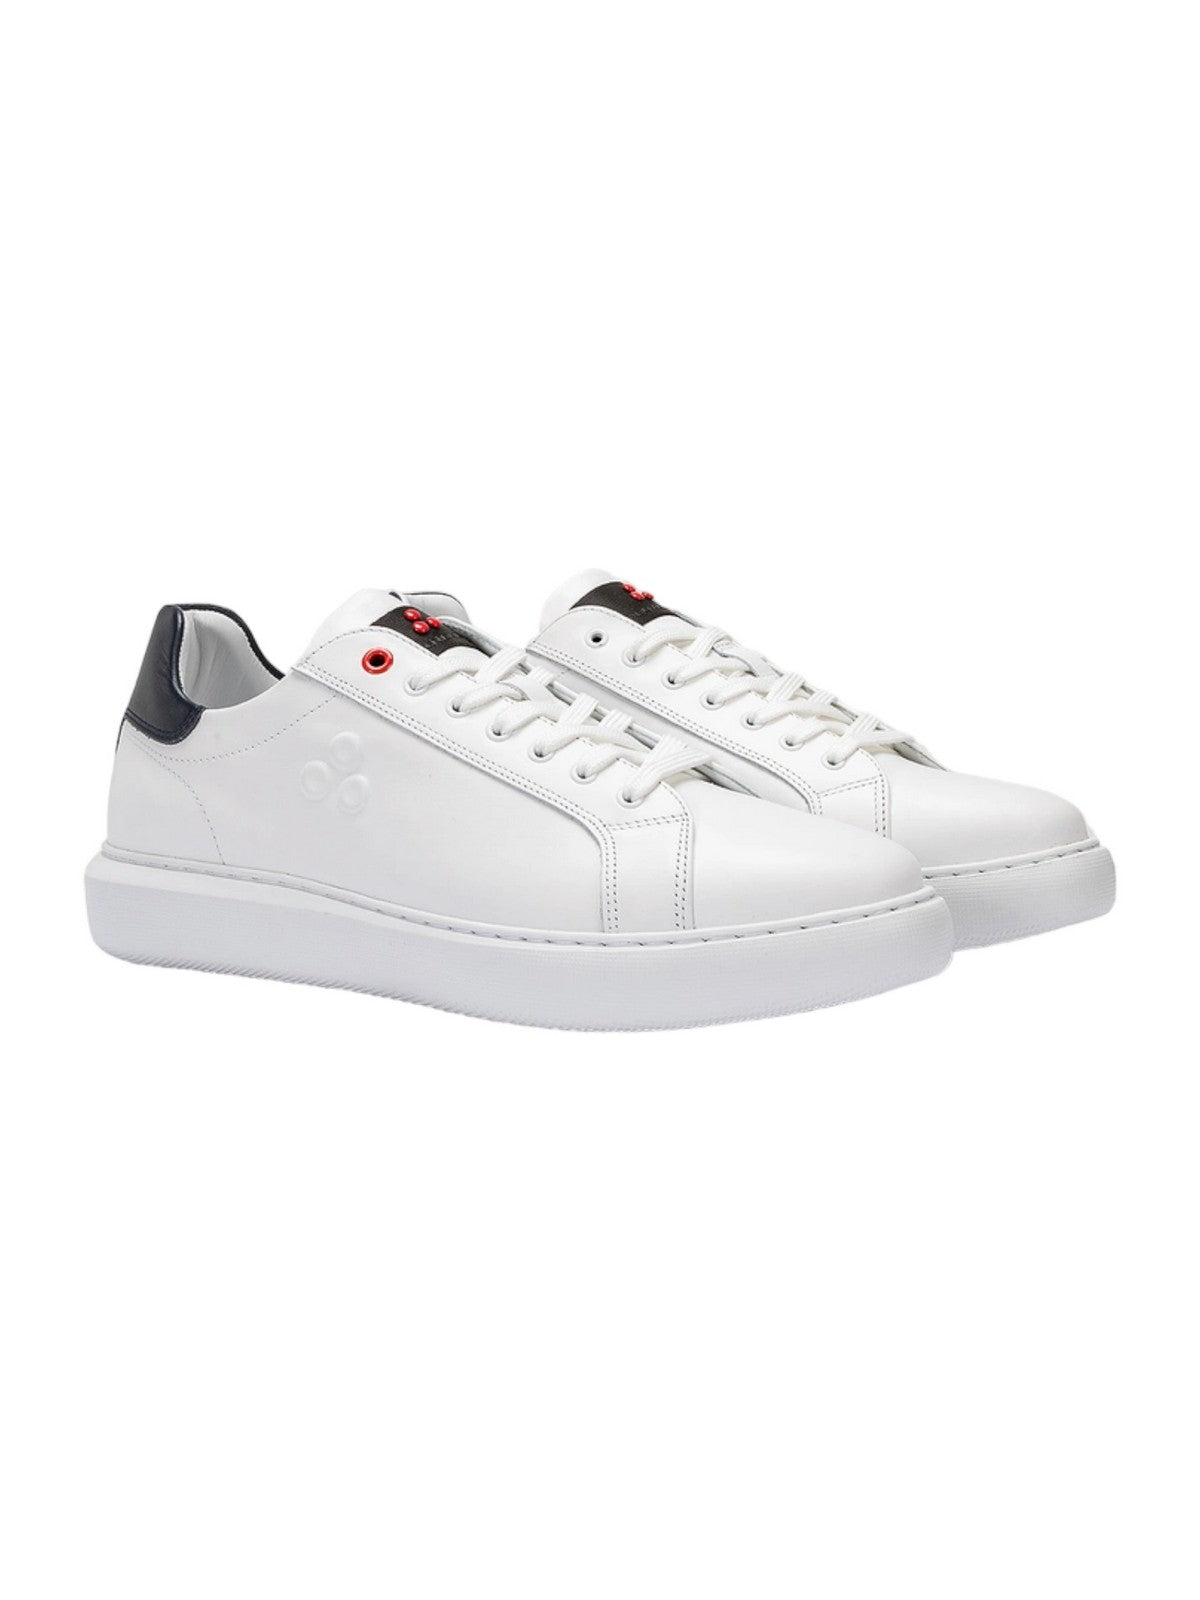 PEUTEREY Sneaker Uomo  PEU4904 99010385 BIAGE Bianco